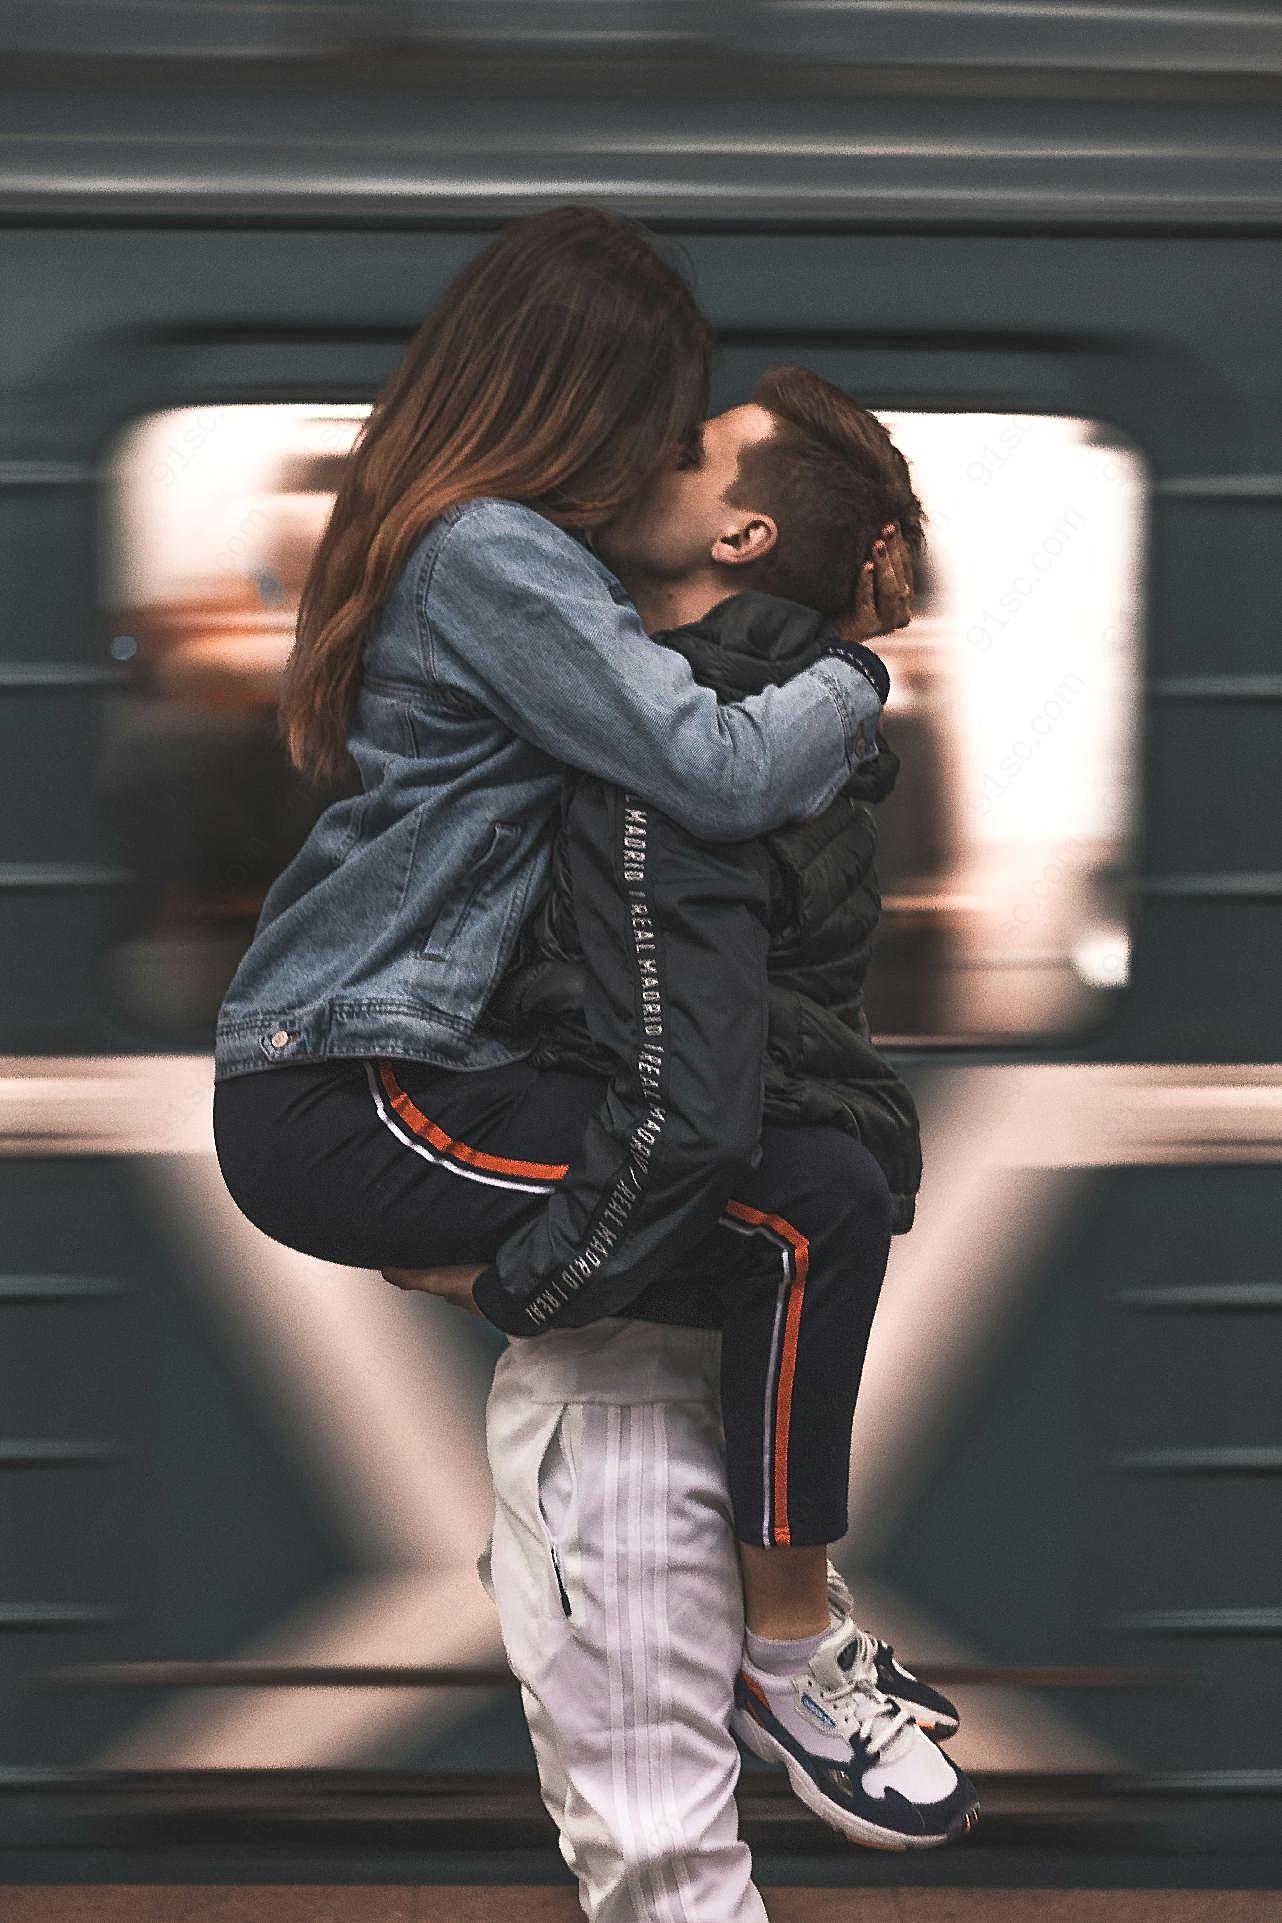 情侣抱高高接吻图片摄影